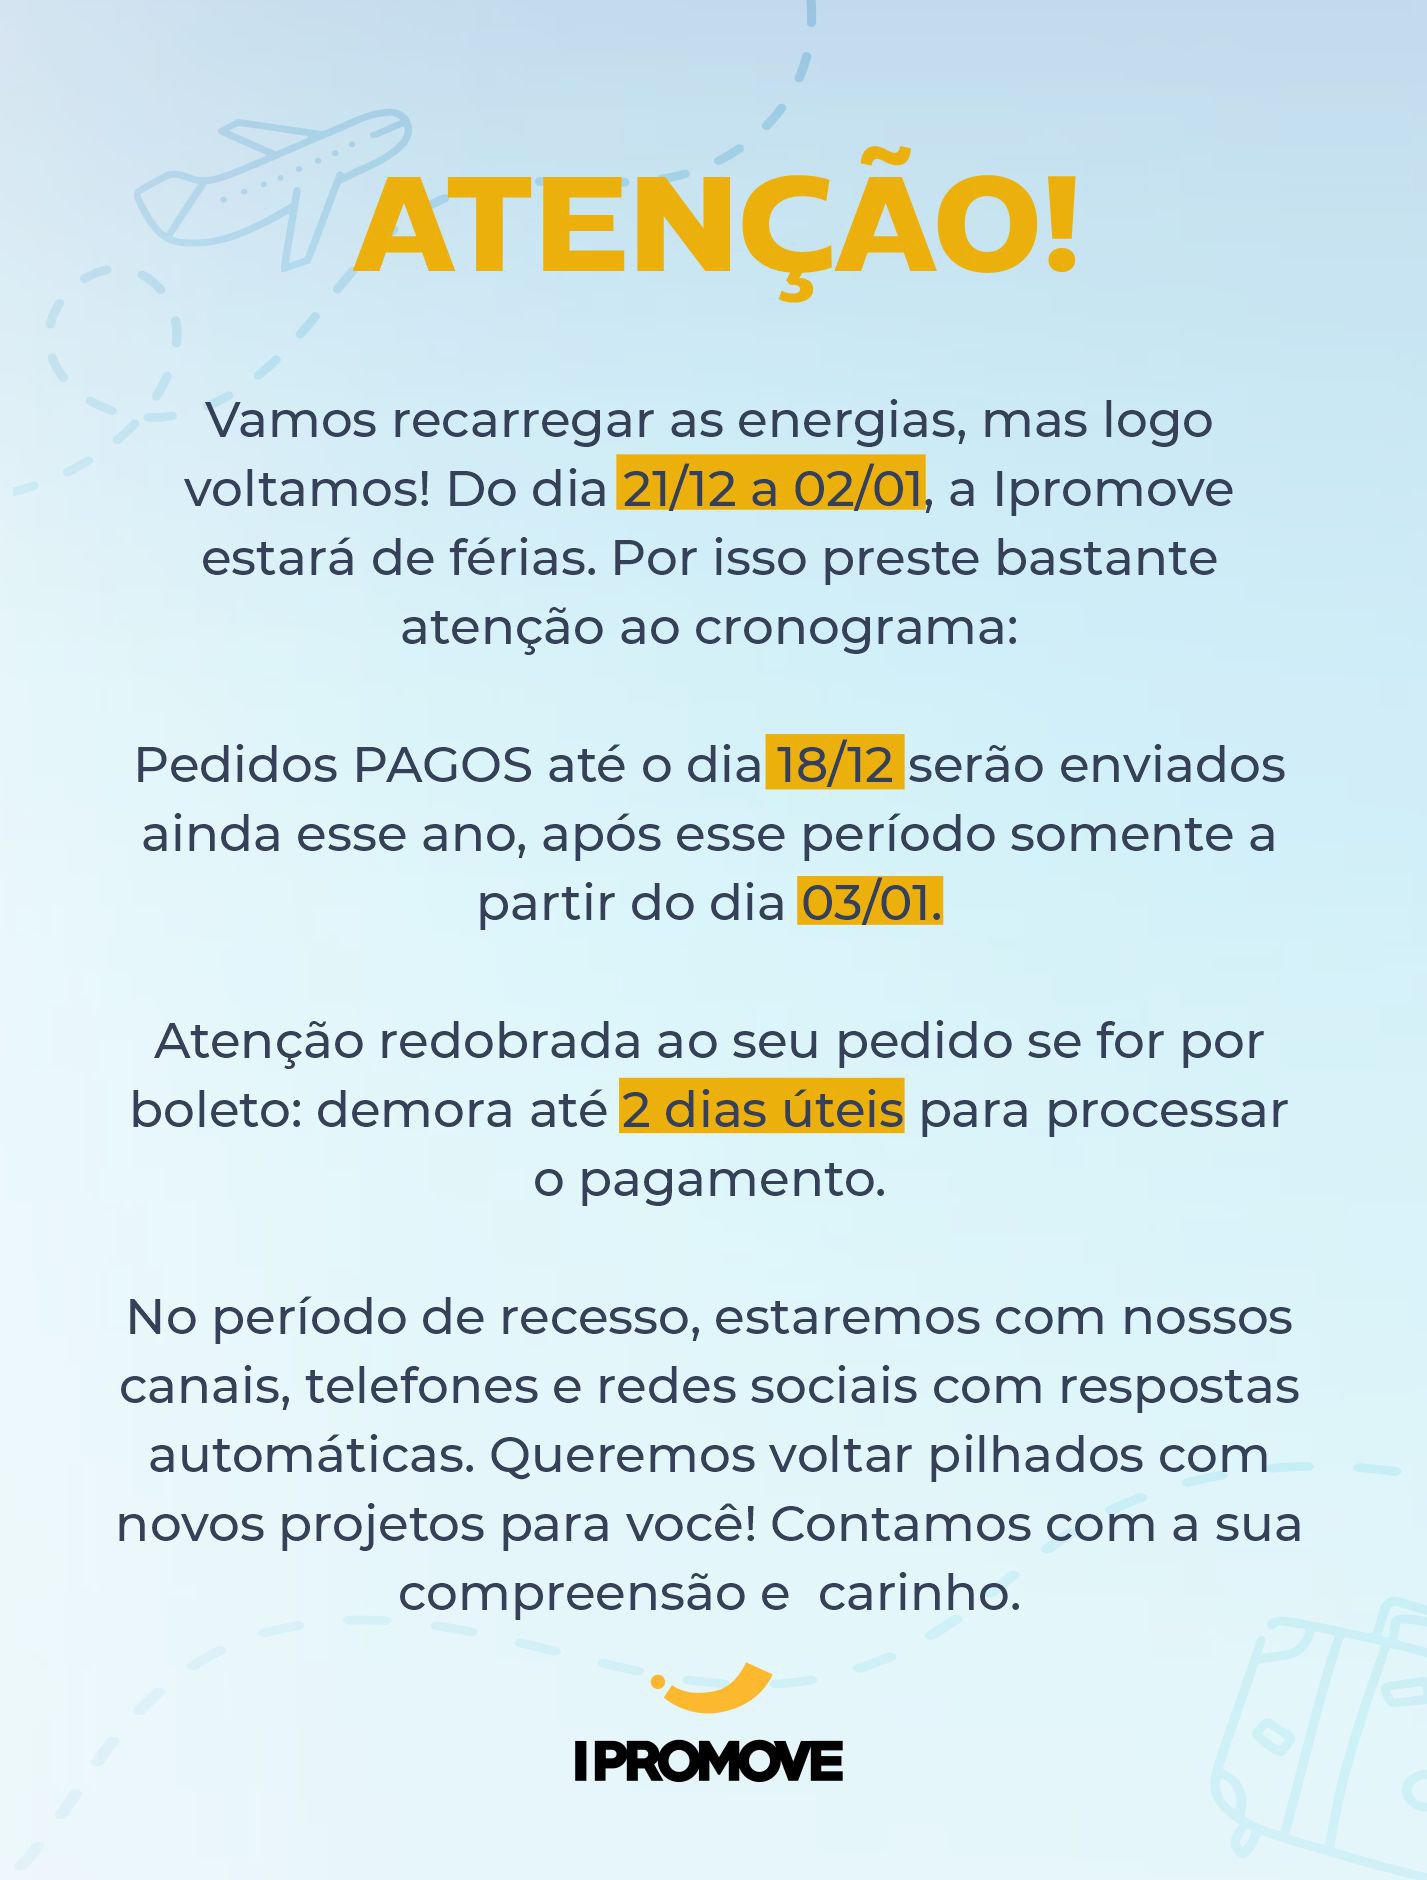 Igreja Adventista no Brasil Realiza 10 Dias de Oração no Metaverso